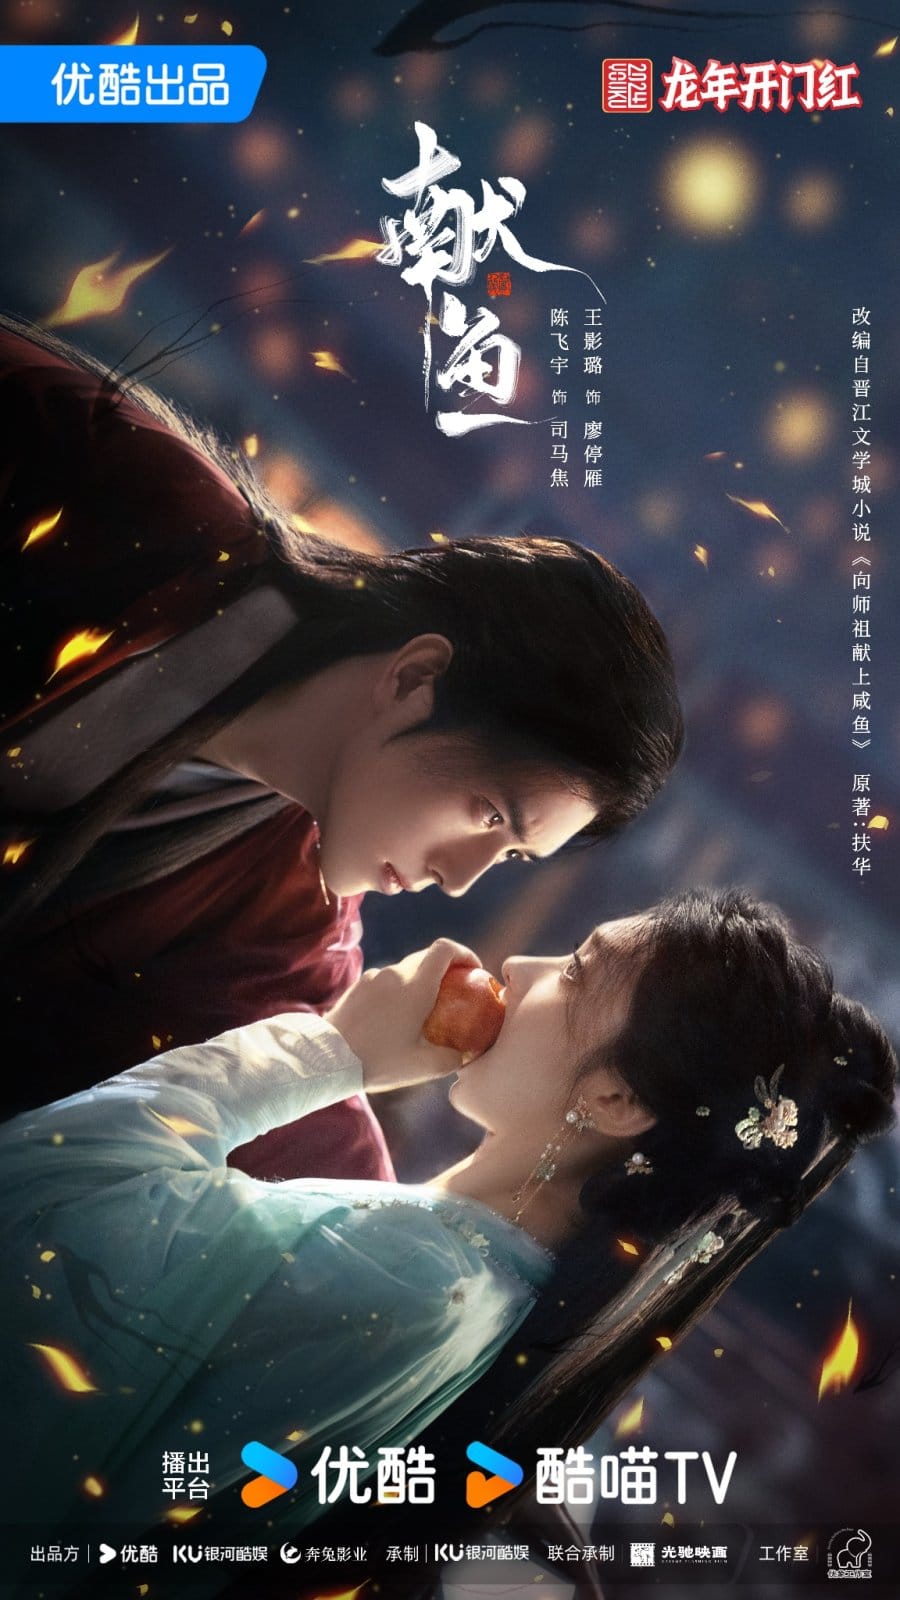 Чэнь Фэй Юй и Ван Ин Лу в новом постере к фэнтези-дораме "Сянь Юй"